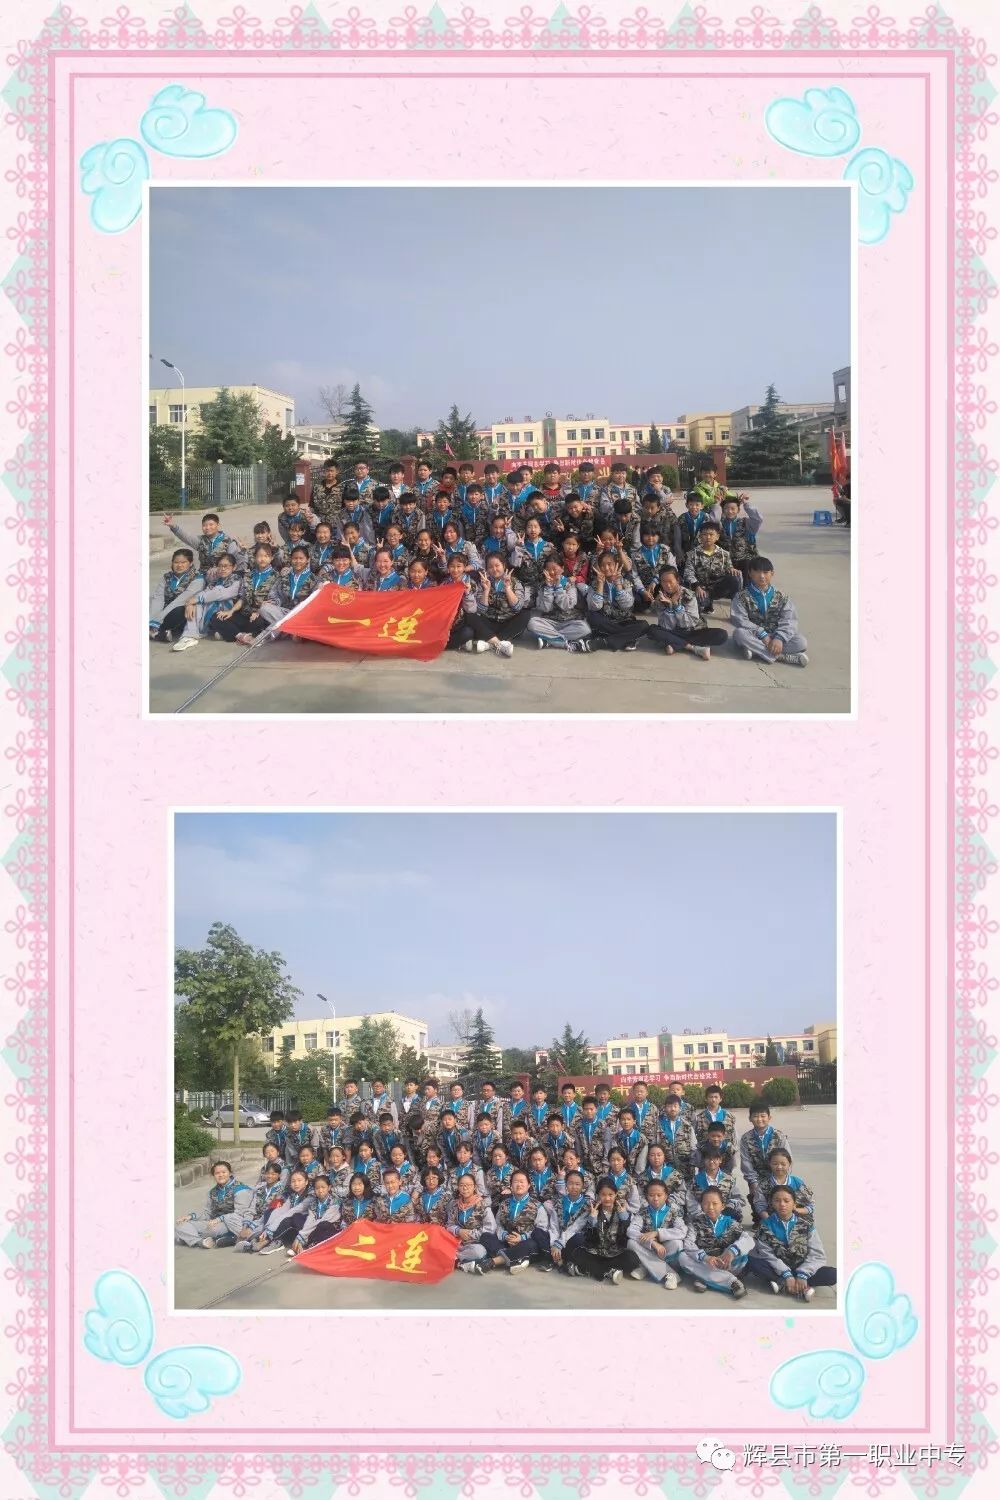 辉县市中小学生素质教育实践基地2018年第十期综合实践活动圆满结束